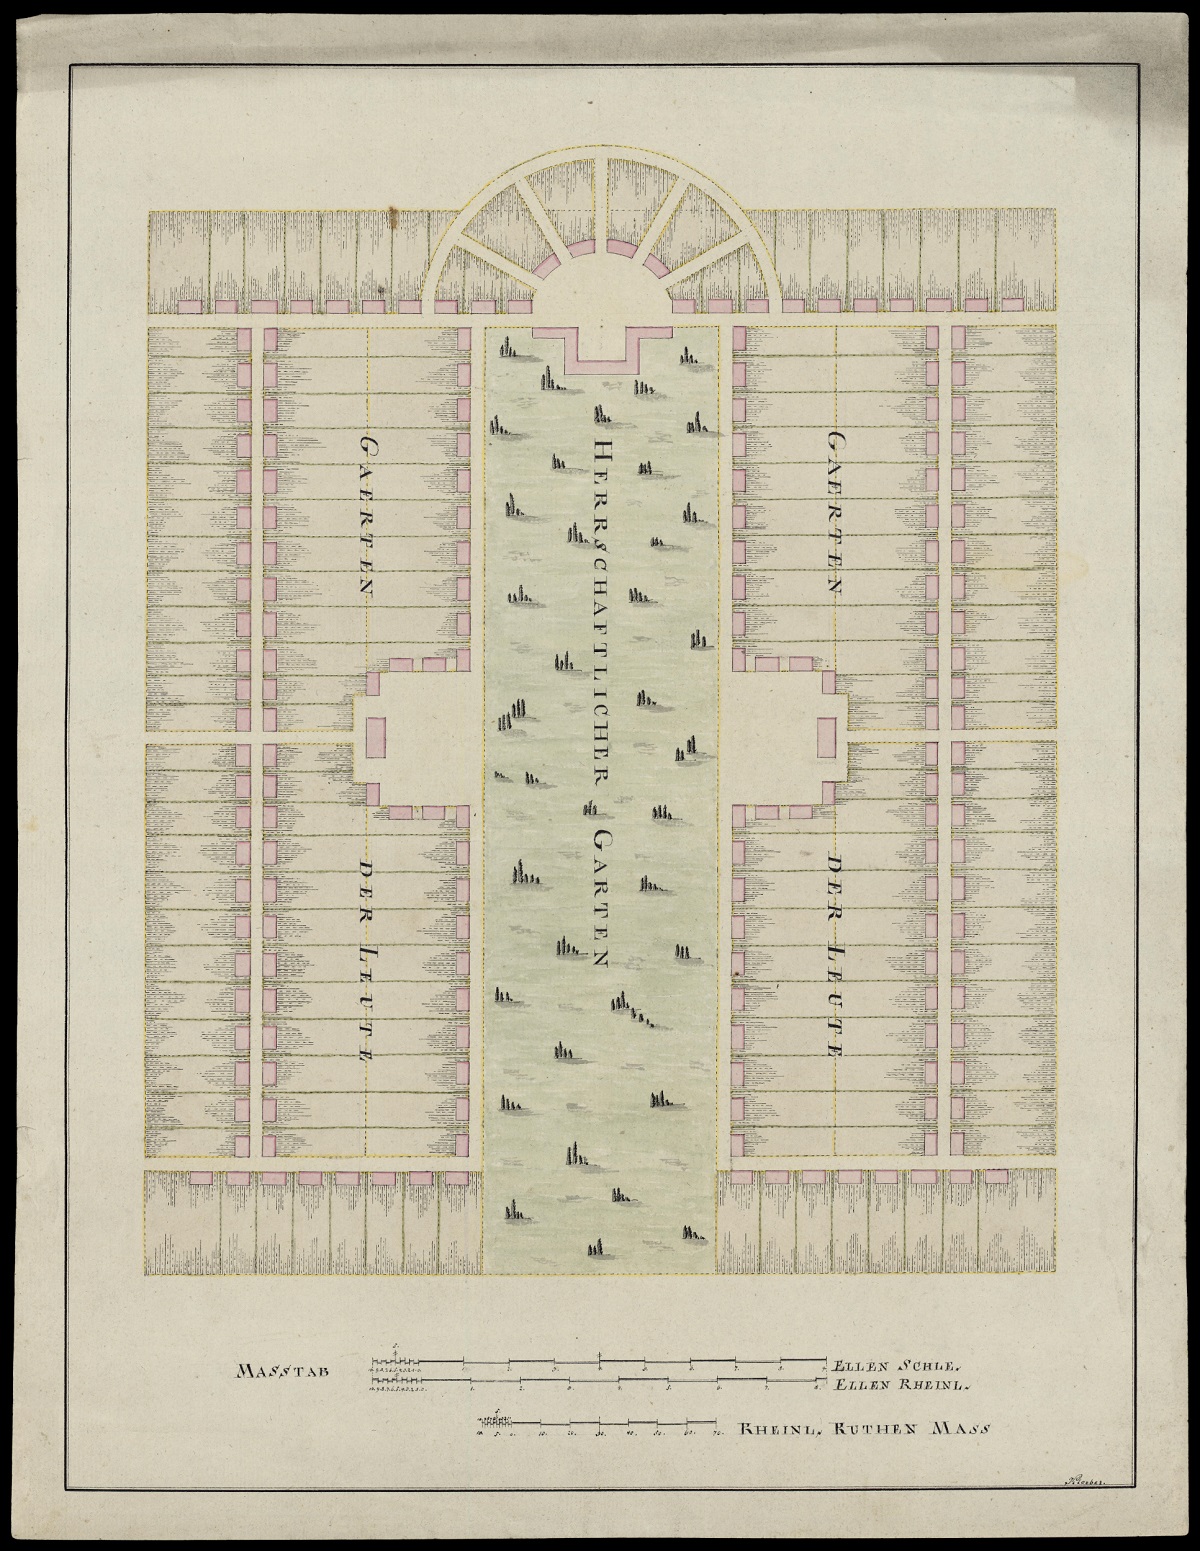 Detailplan zum Garten Herrschaftlicher Garten und Garten der Leute, Zeichnung, vor 1821